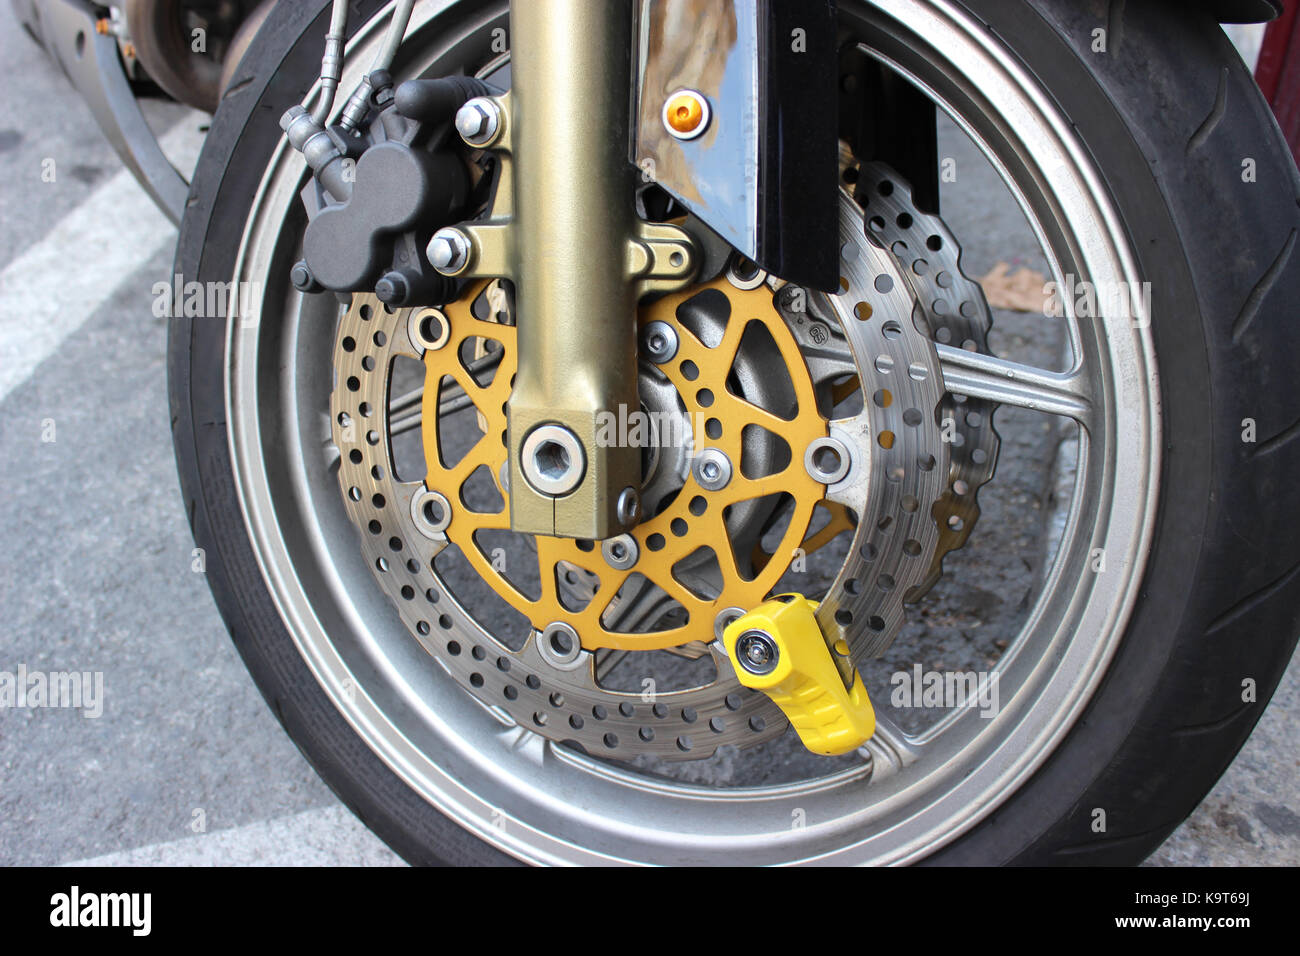 Gelbe Scheibe Lock auf Motorrad Bremsscheibe Stockfotografie - Alamy